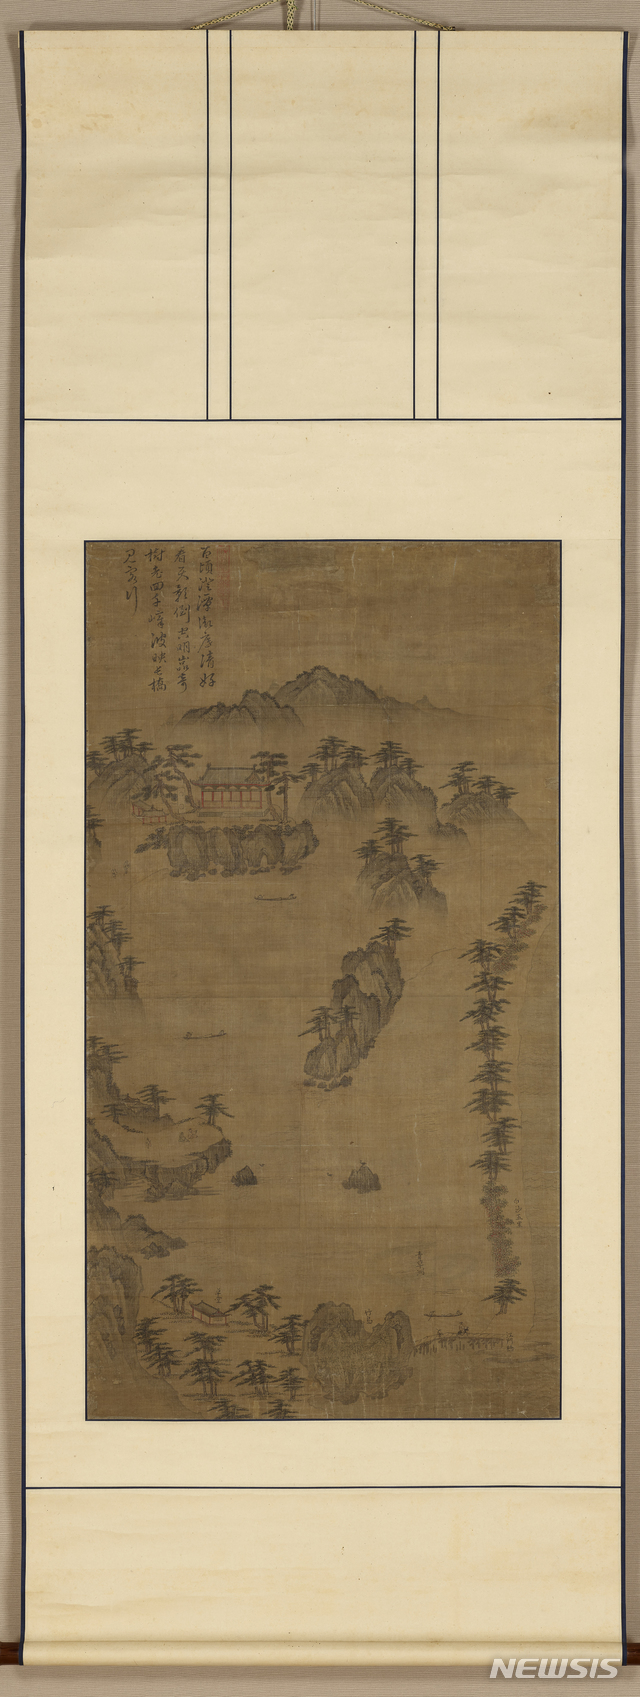 경포대도(鏡浦臺圖), 102×55㎝, 조선 16세기 중반, 비단에 수묵과 담채